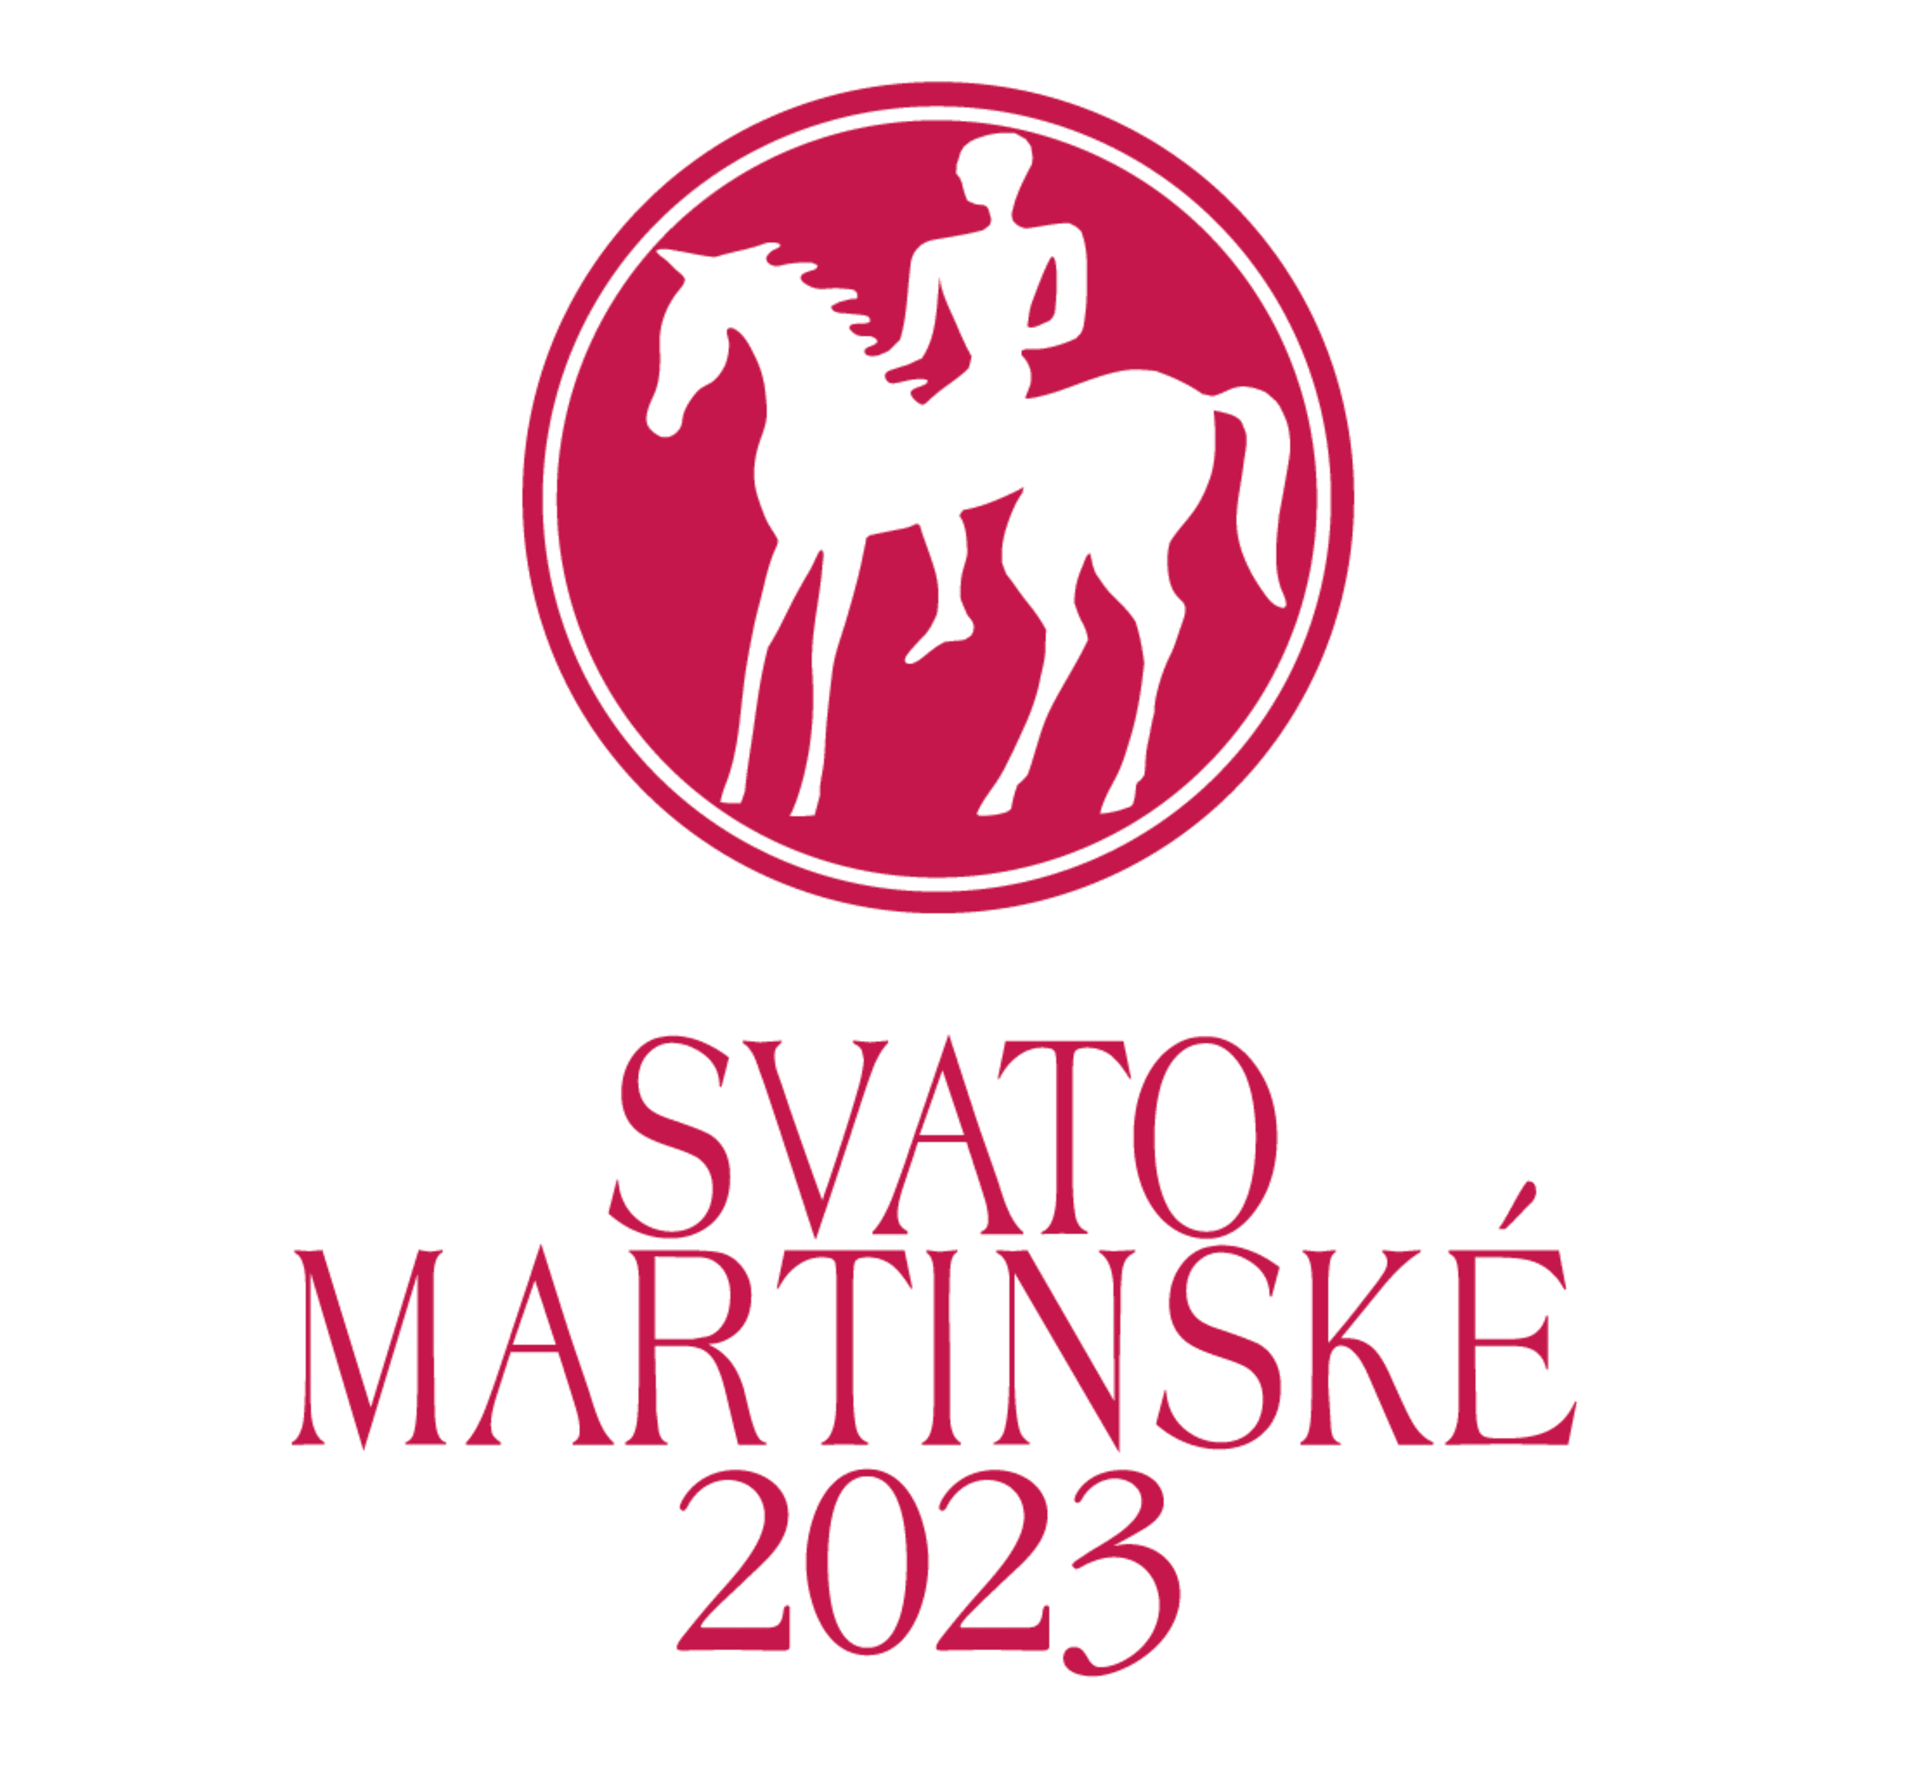 Svatomartinské víno 2023, ochranná známka